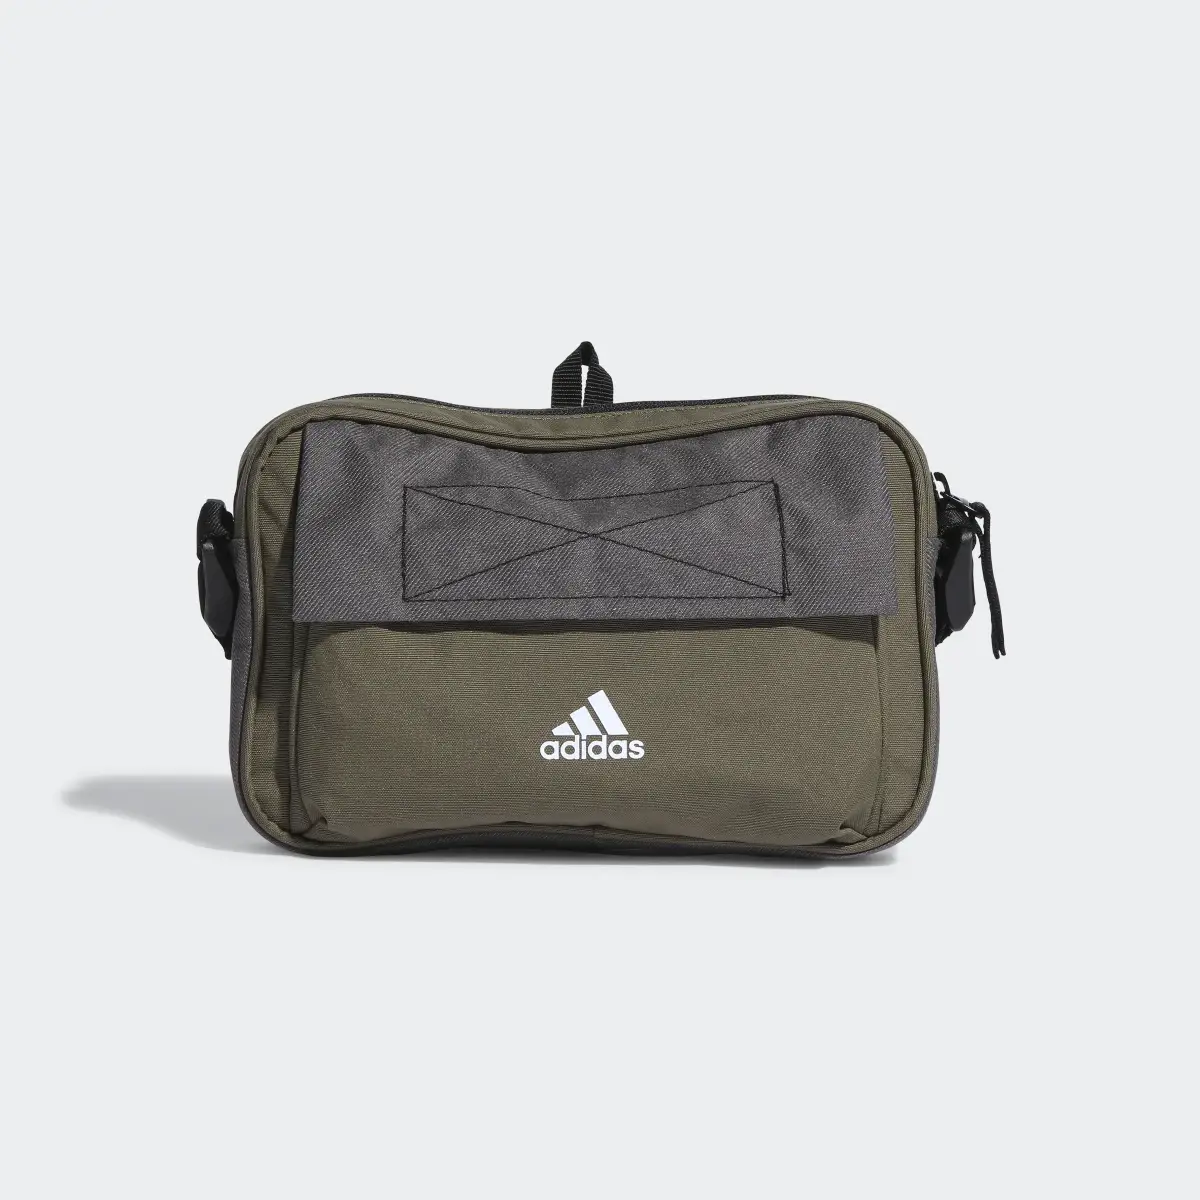 Adidas City Xplorer Organizer Bag. 2